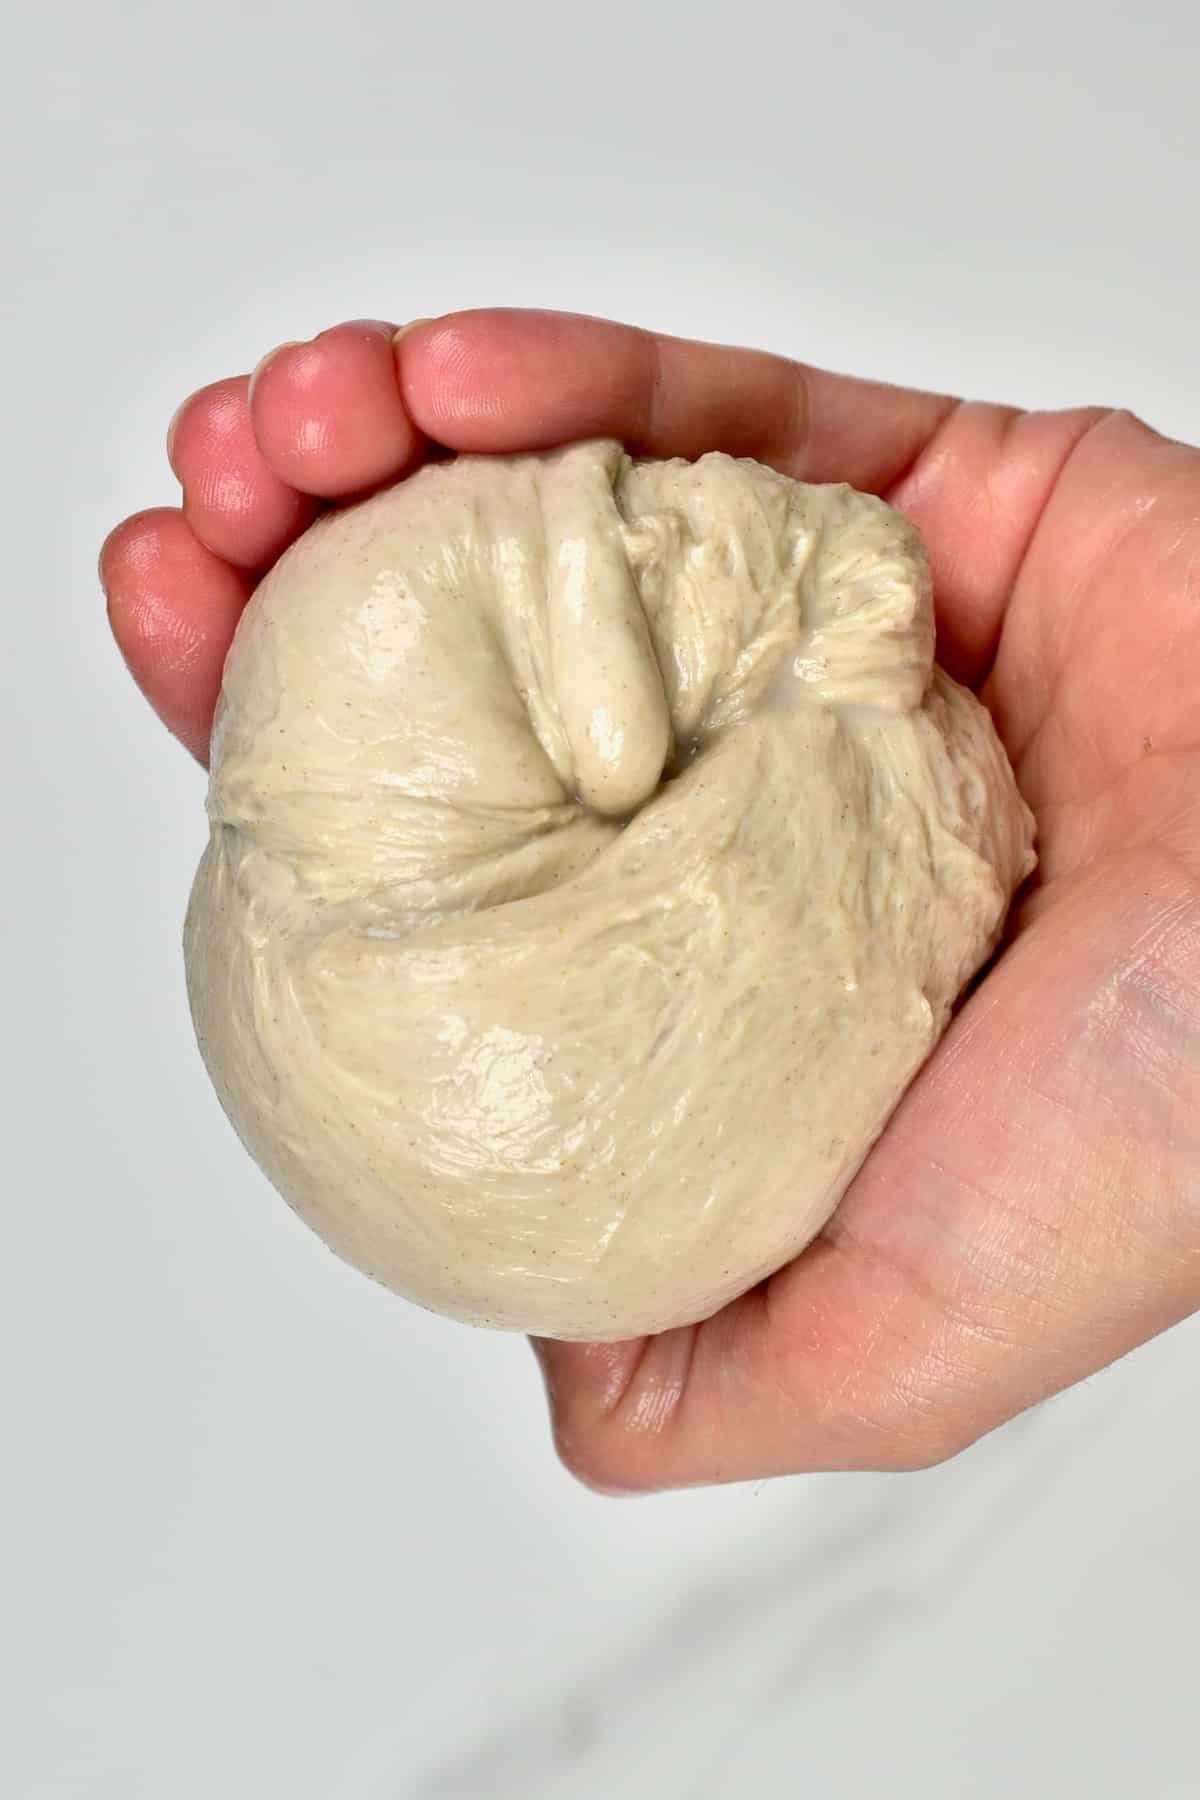 A ball of gluten only dough